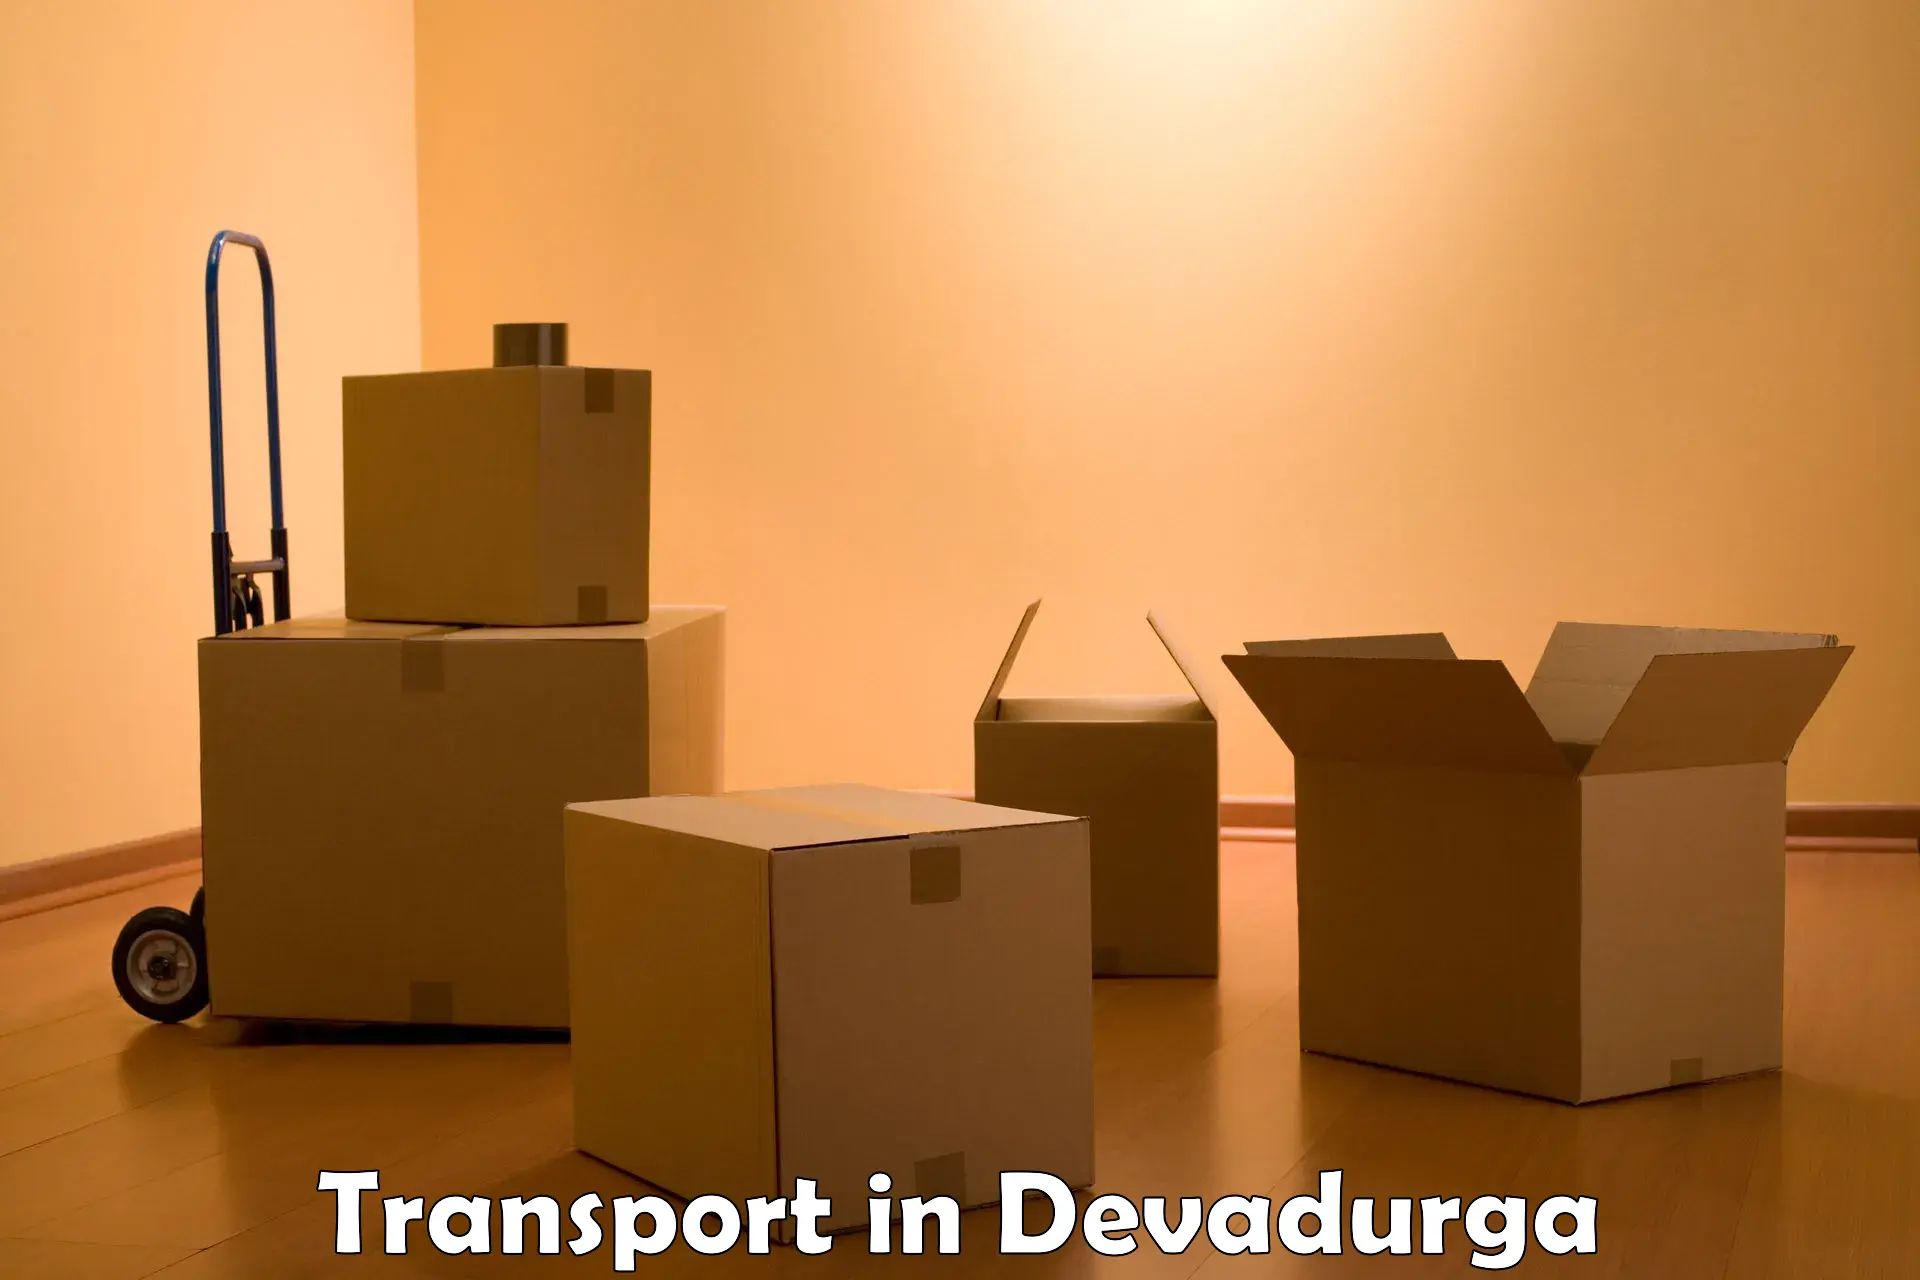 Interstate transport services in Devadurga